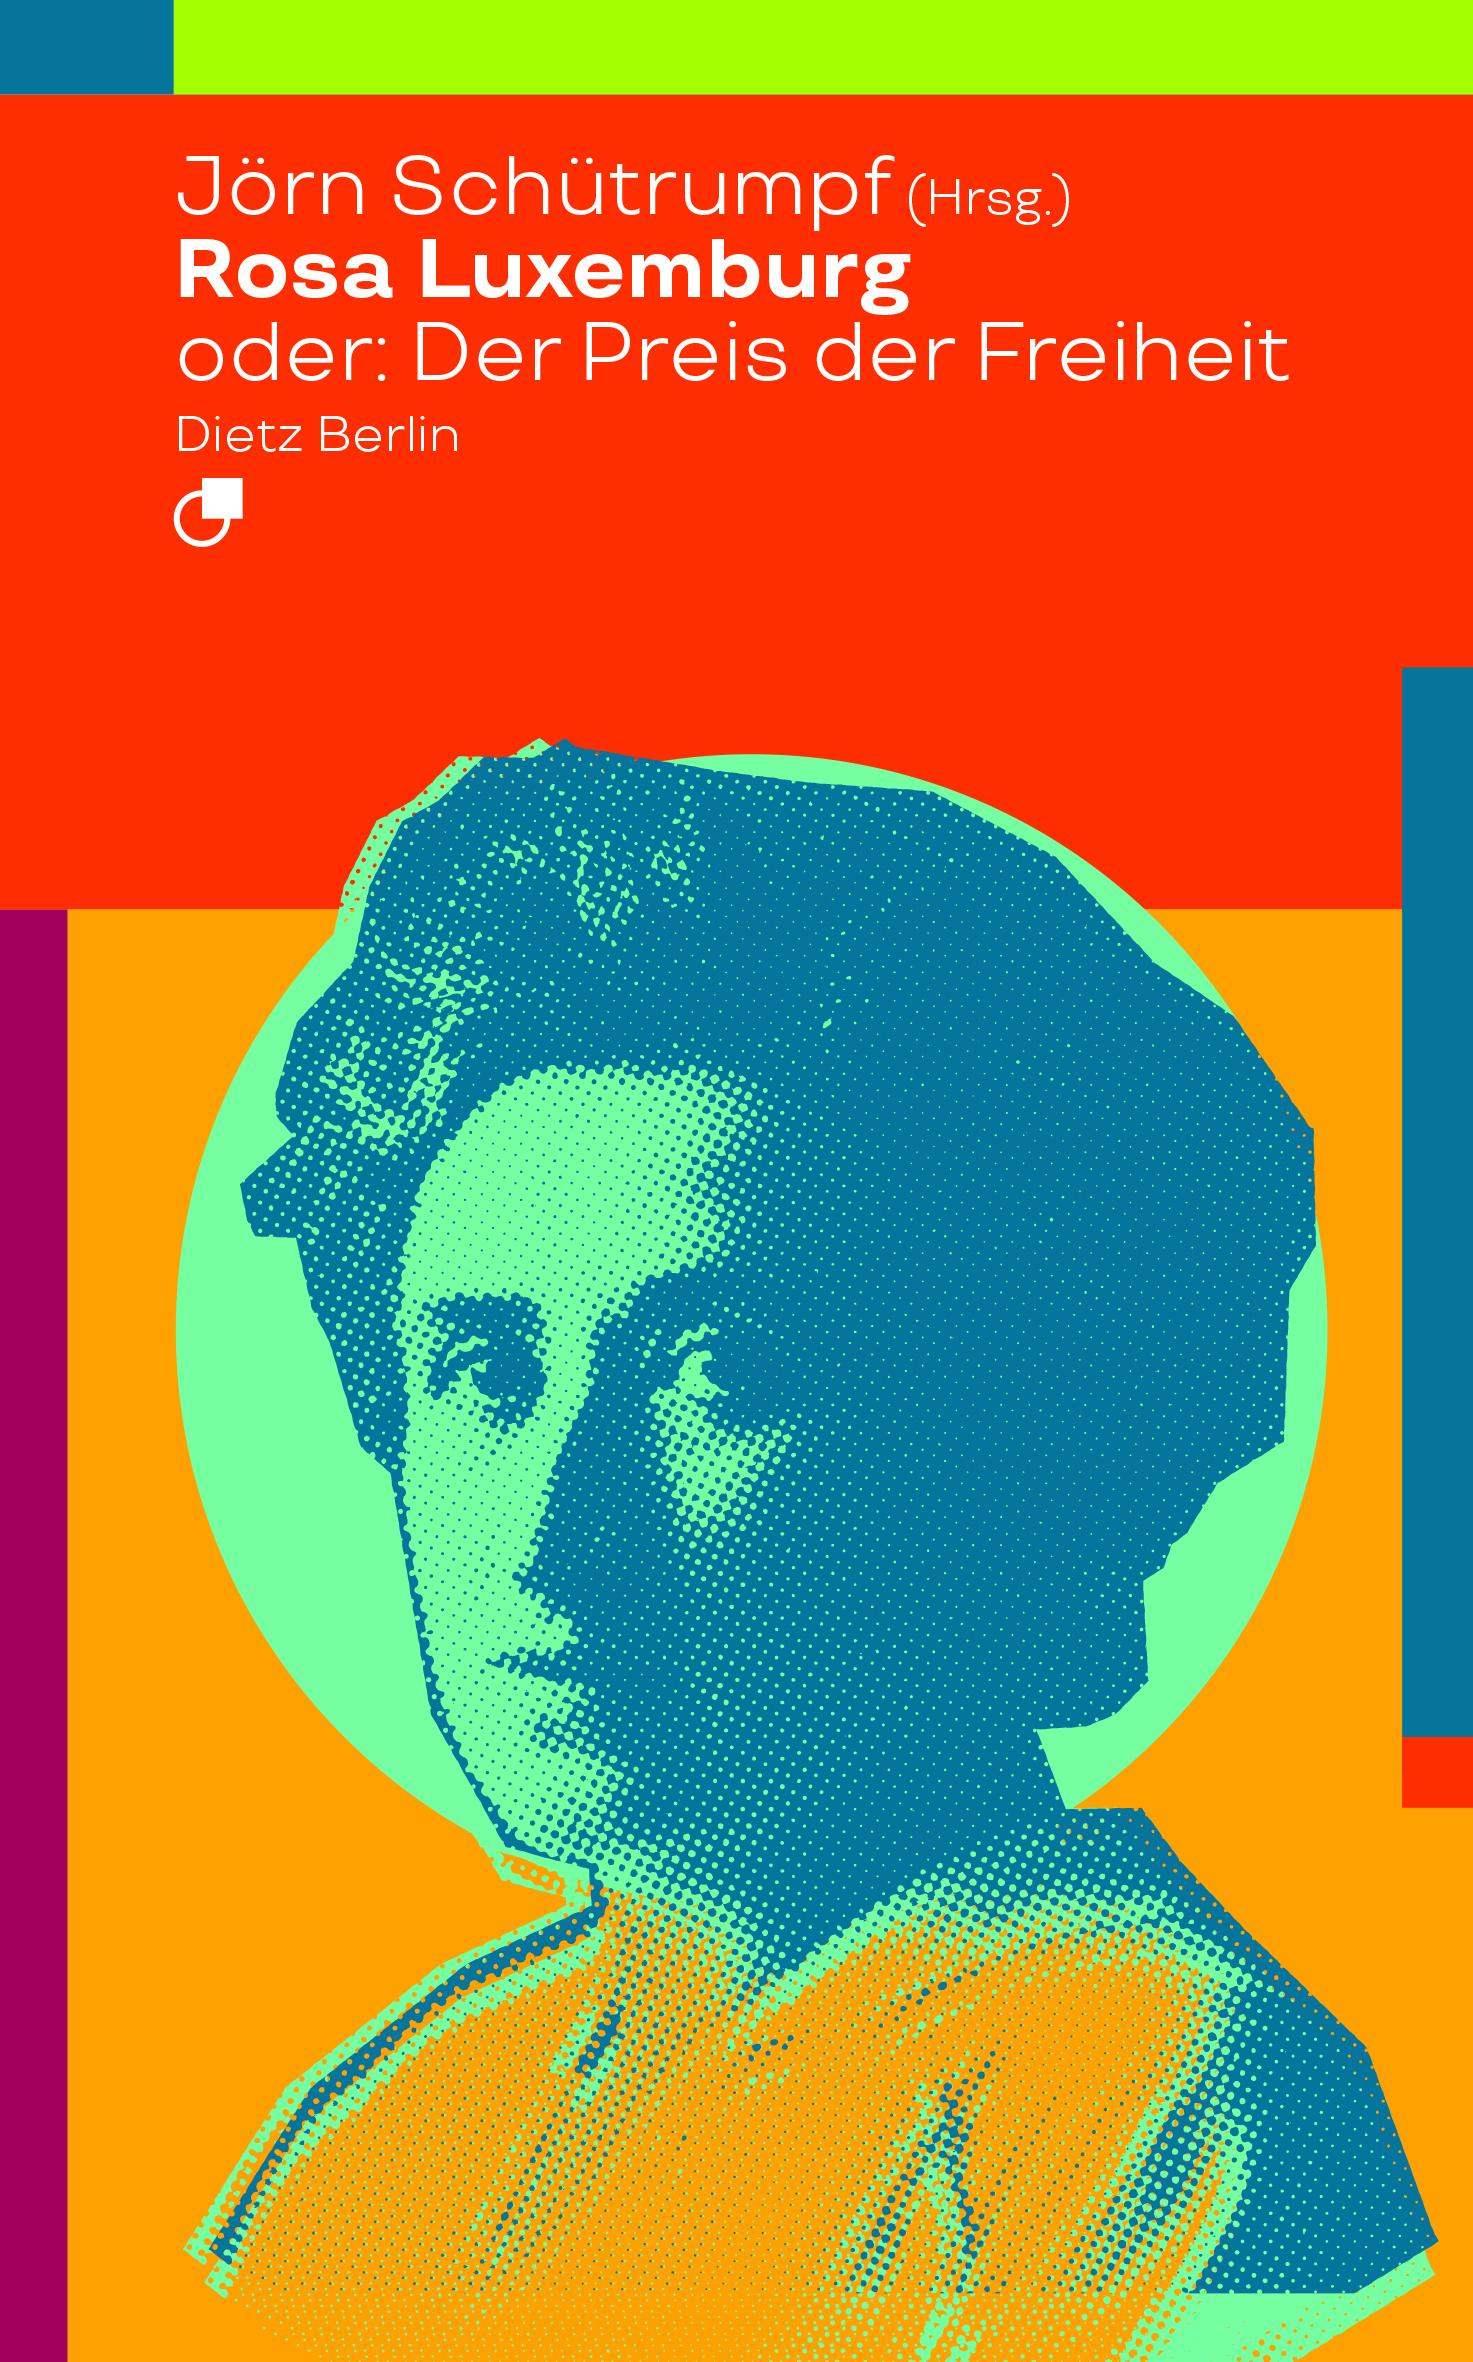 Rosa Luxemburg oder: Der Preis der Freiheit / Jörn Schütrumpf / Taschenbuch / Historische Miniaturen / Deutsch / 2018 / Dietz Verlag Berlin GmbH / EAN 9783320023515 - Schütrumpf, Jörn